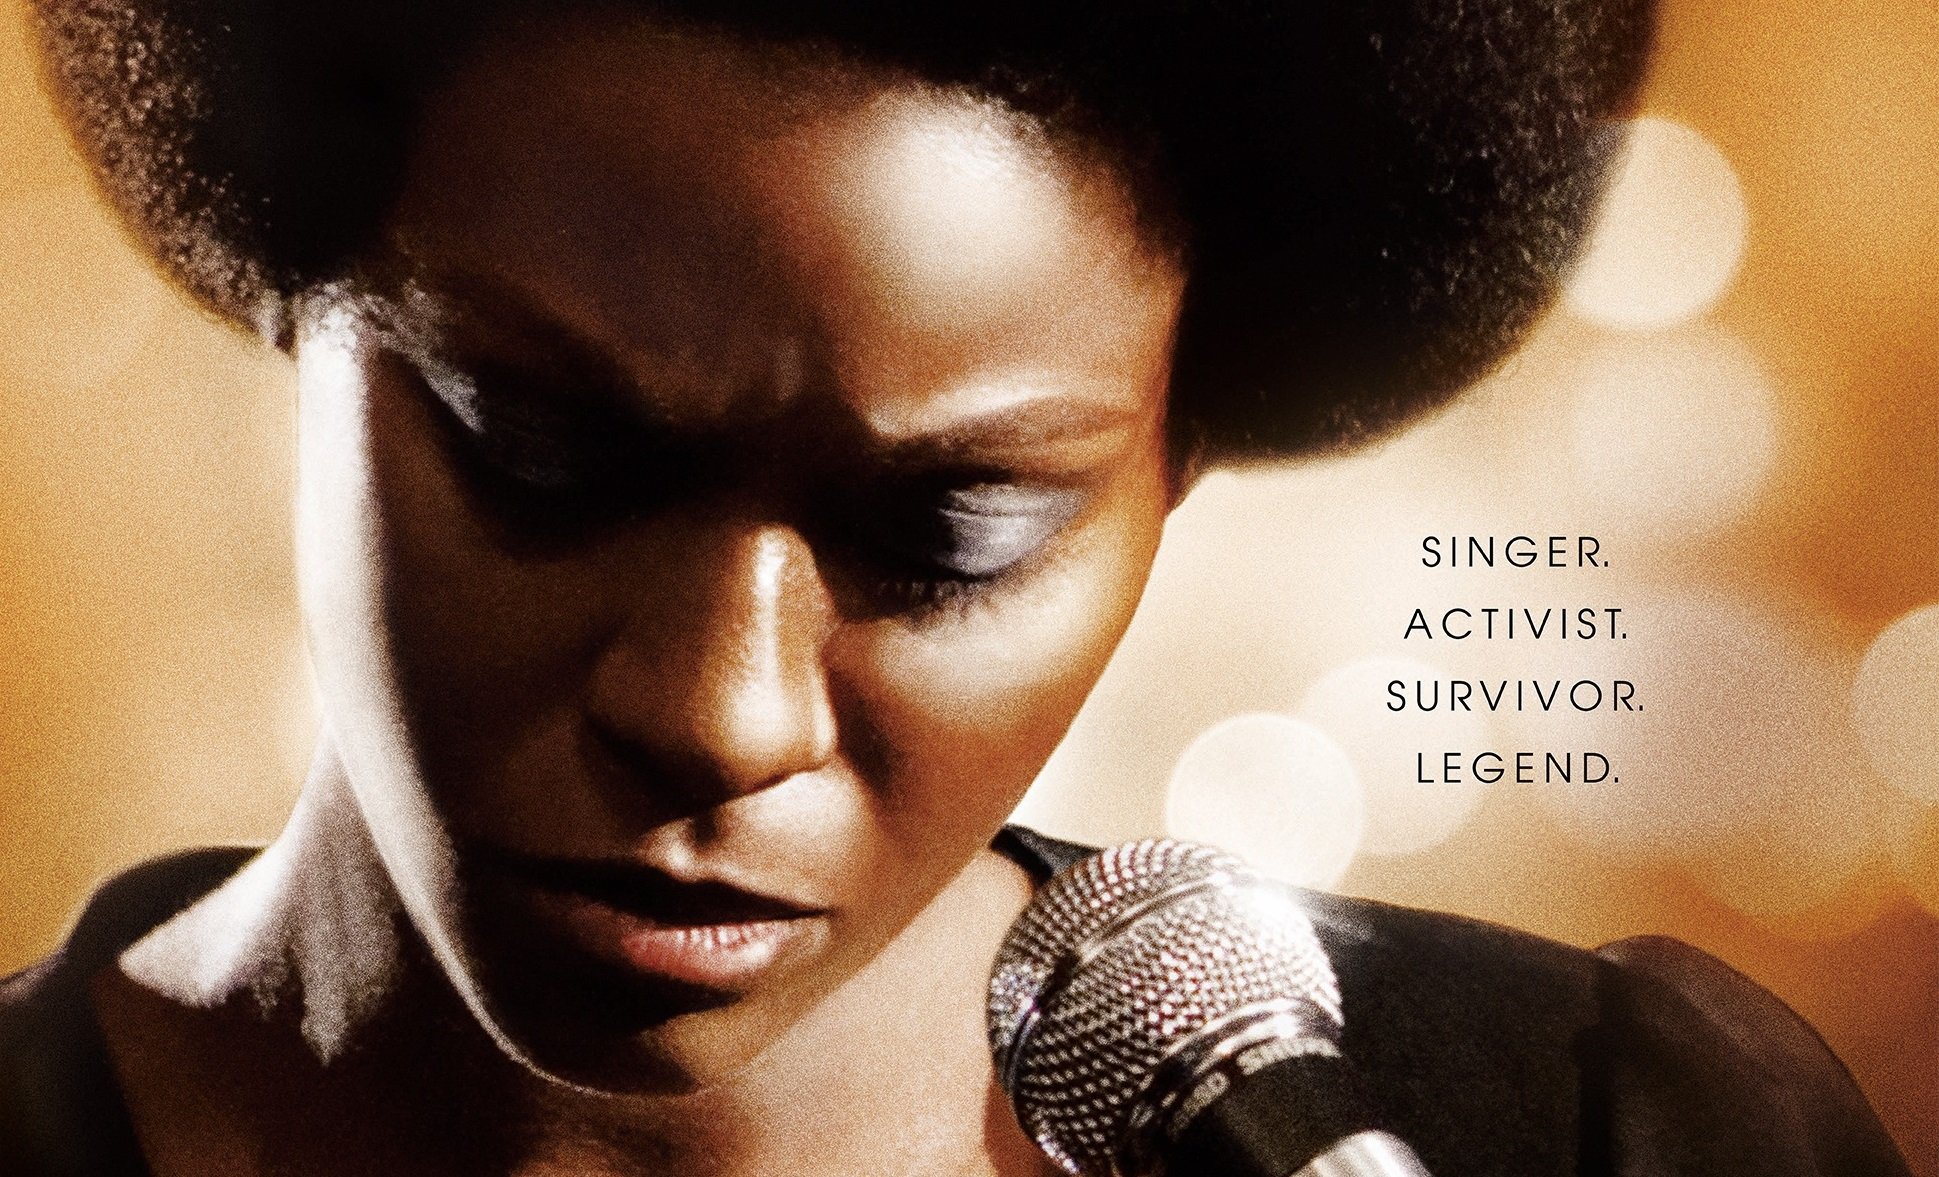 Le biopic de Nina Simone a fait couler beaucoup d'encre cette semaine.